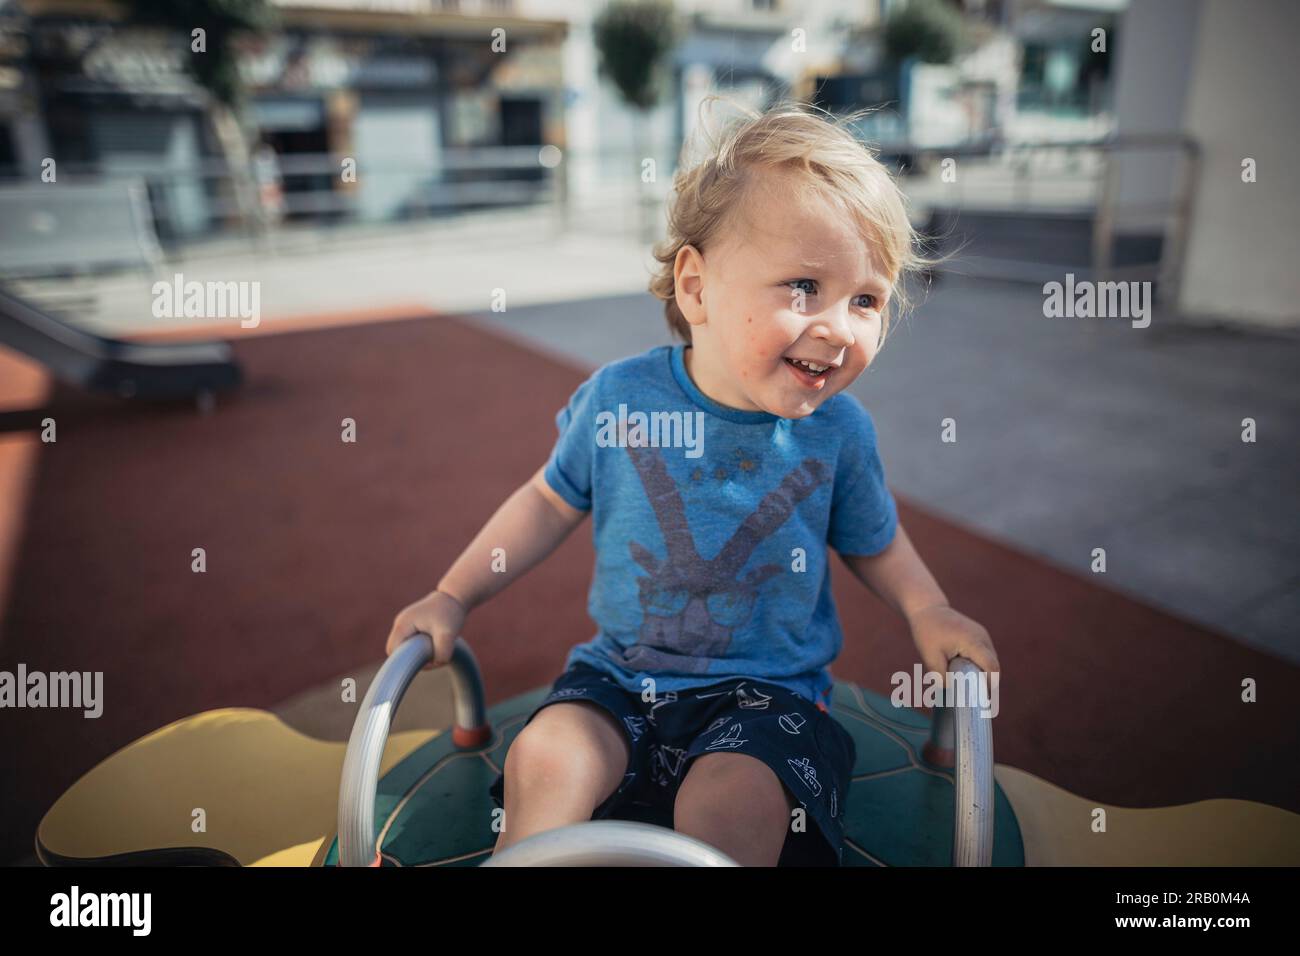 Niñito en playground Foto de stock